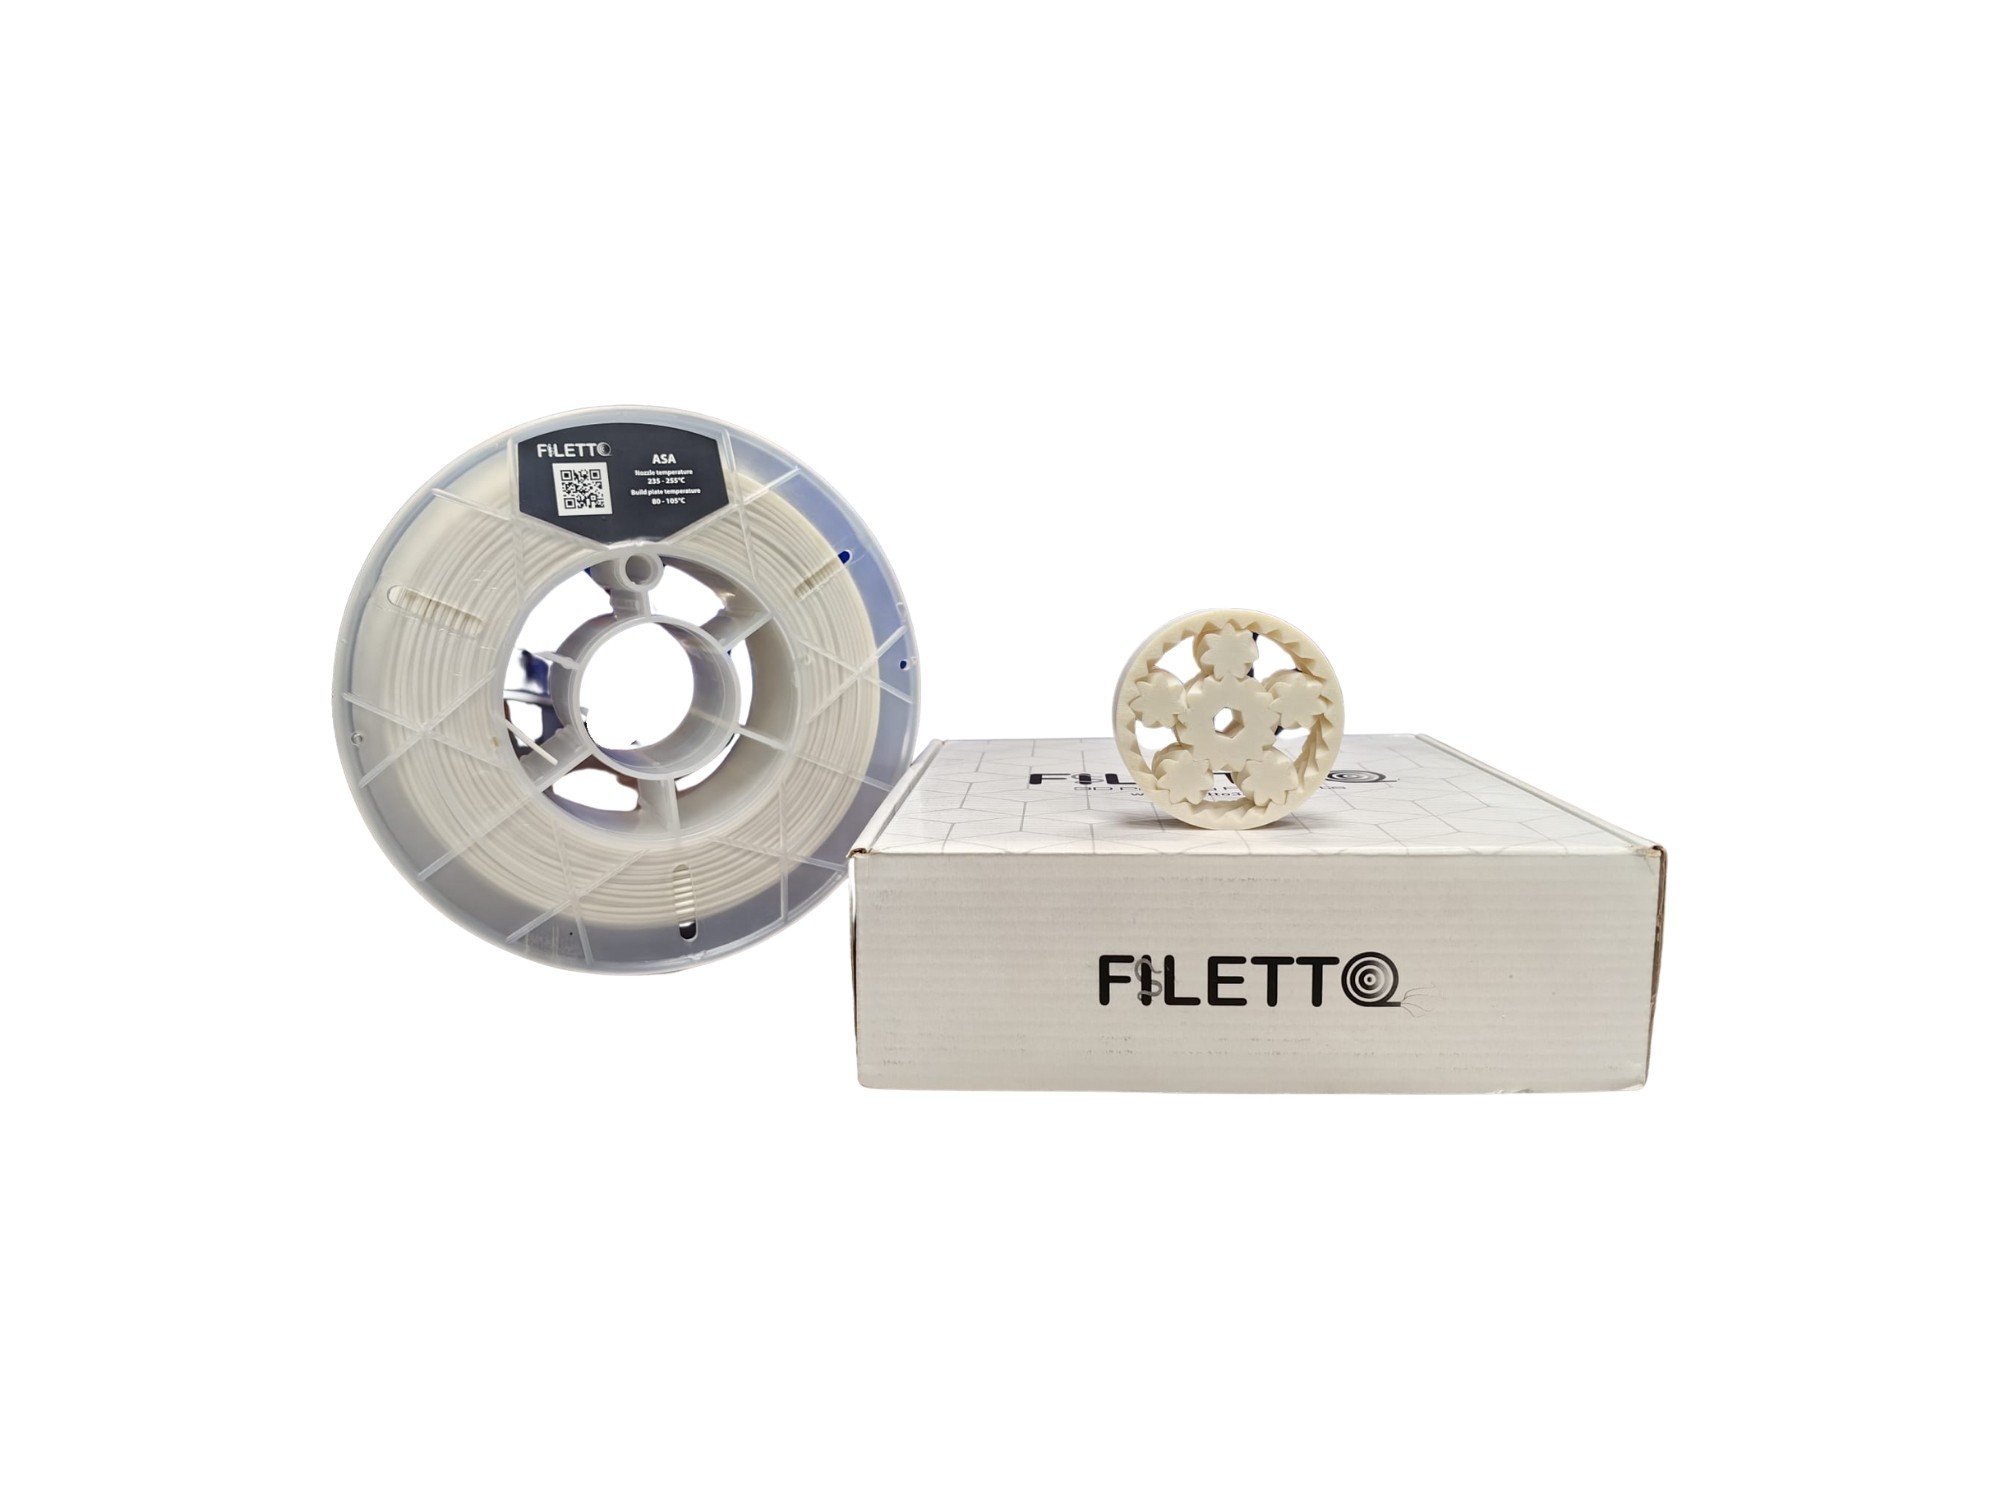 Filetto 1.75 mm ASA Filament 750 gr